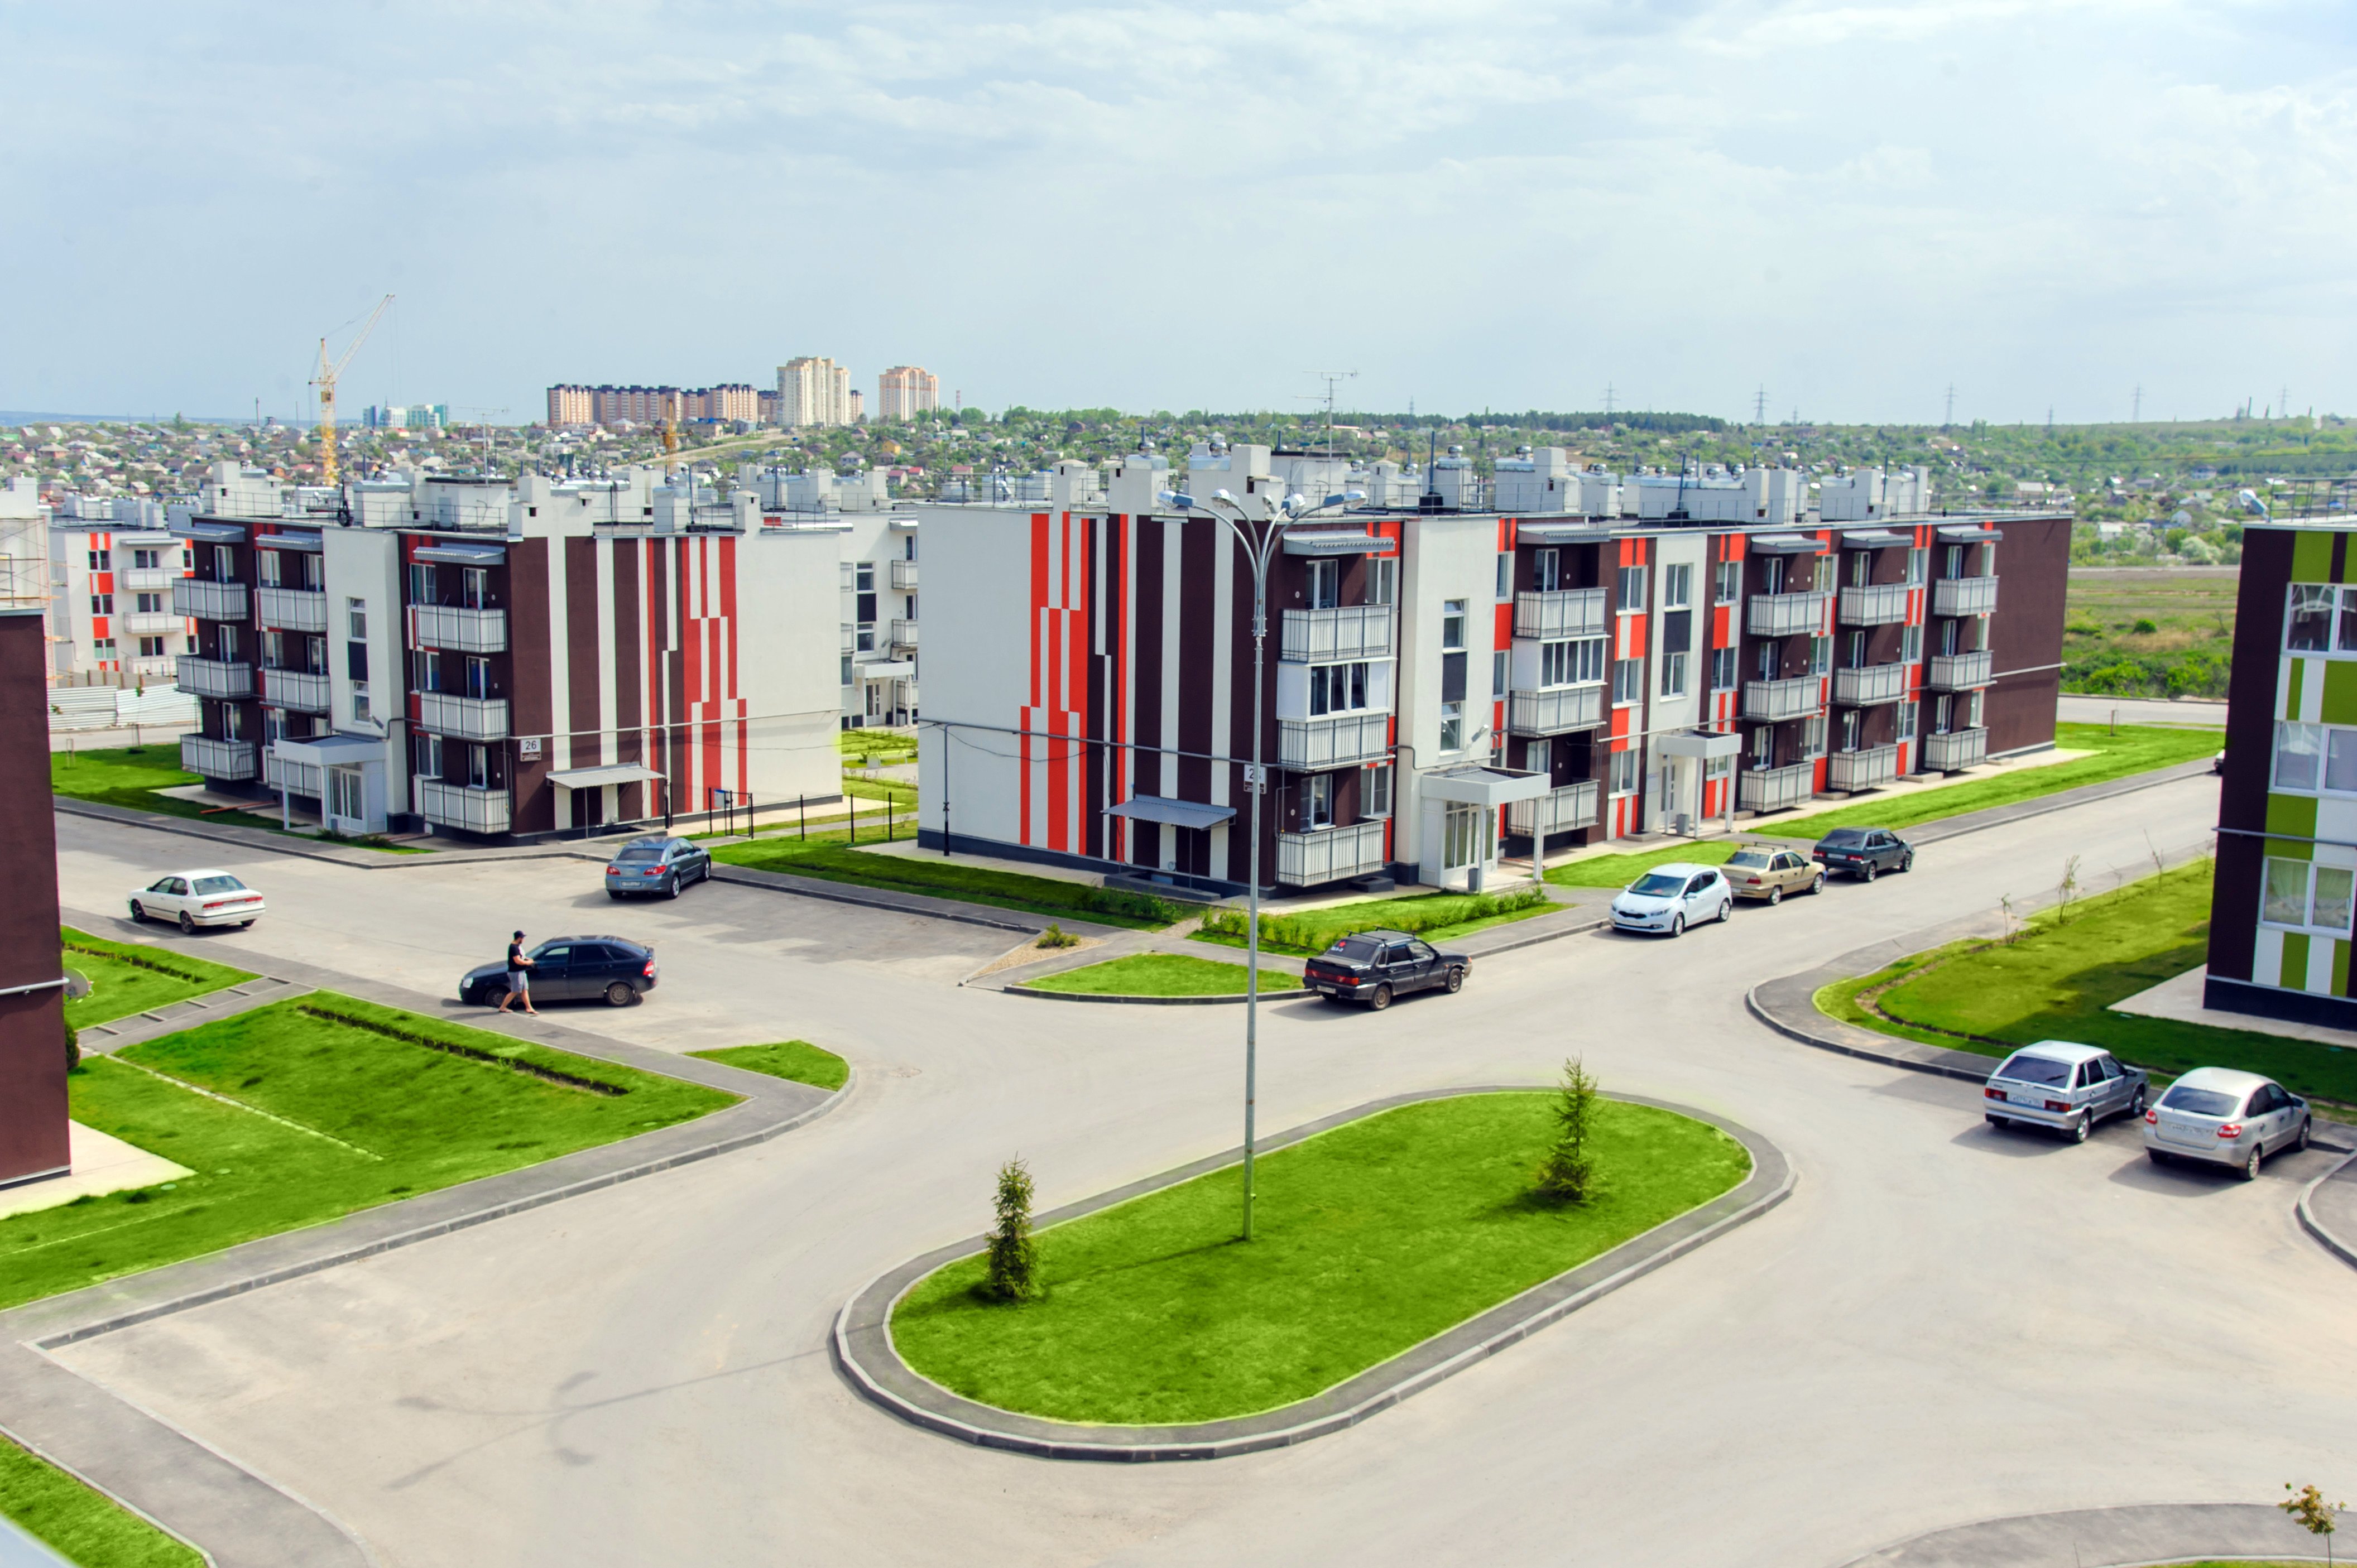 Купить Квартиру В Советском Районе Города Тулы